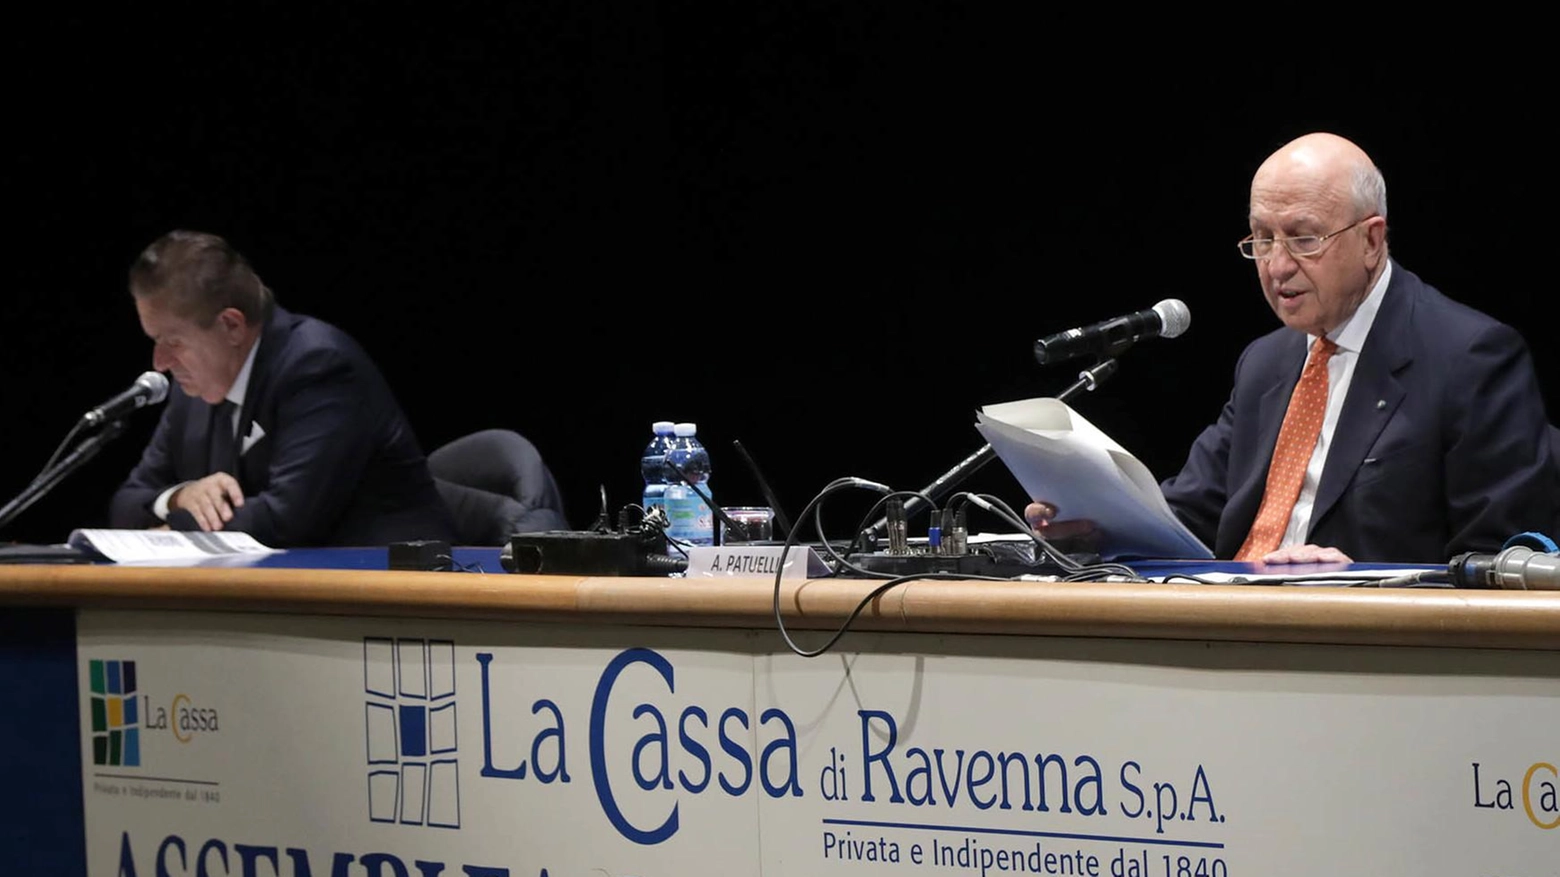 Il bilancio 2022   Cassa, valori al centro  Patuelli: "Ci guidano  alti principi etici"